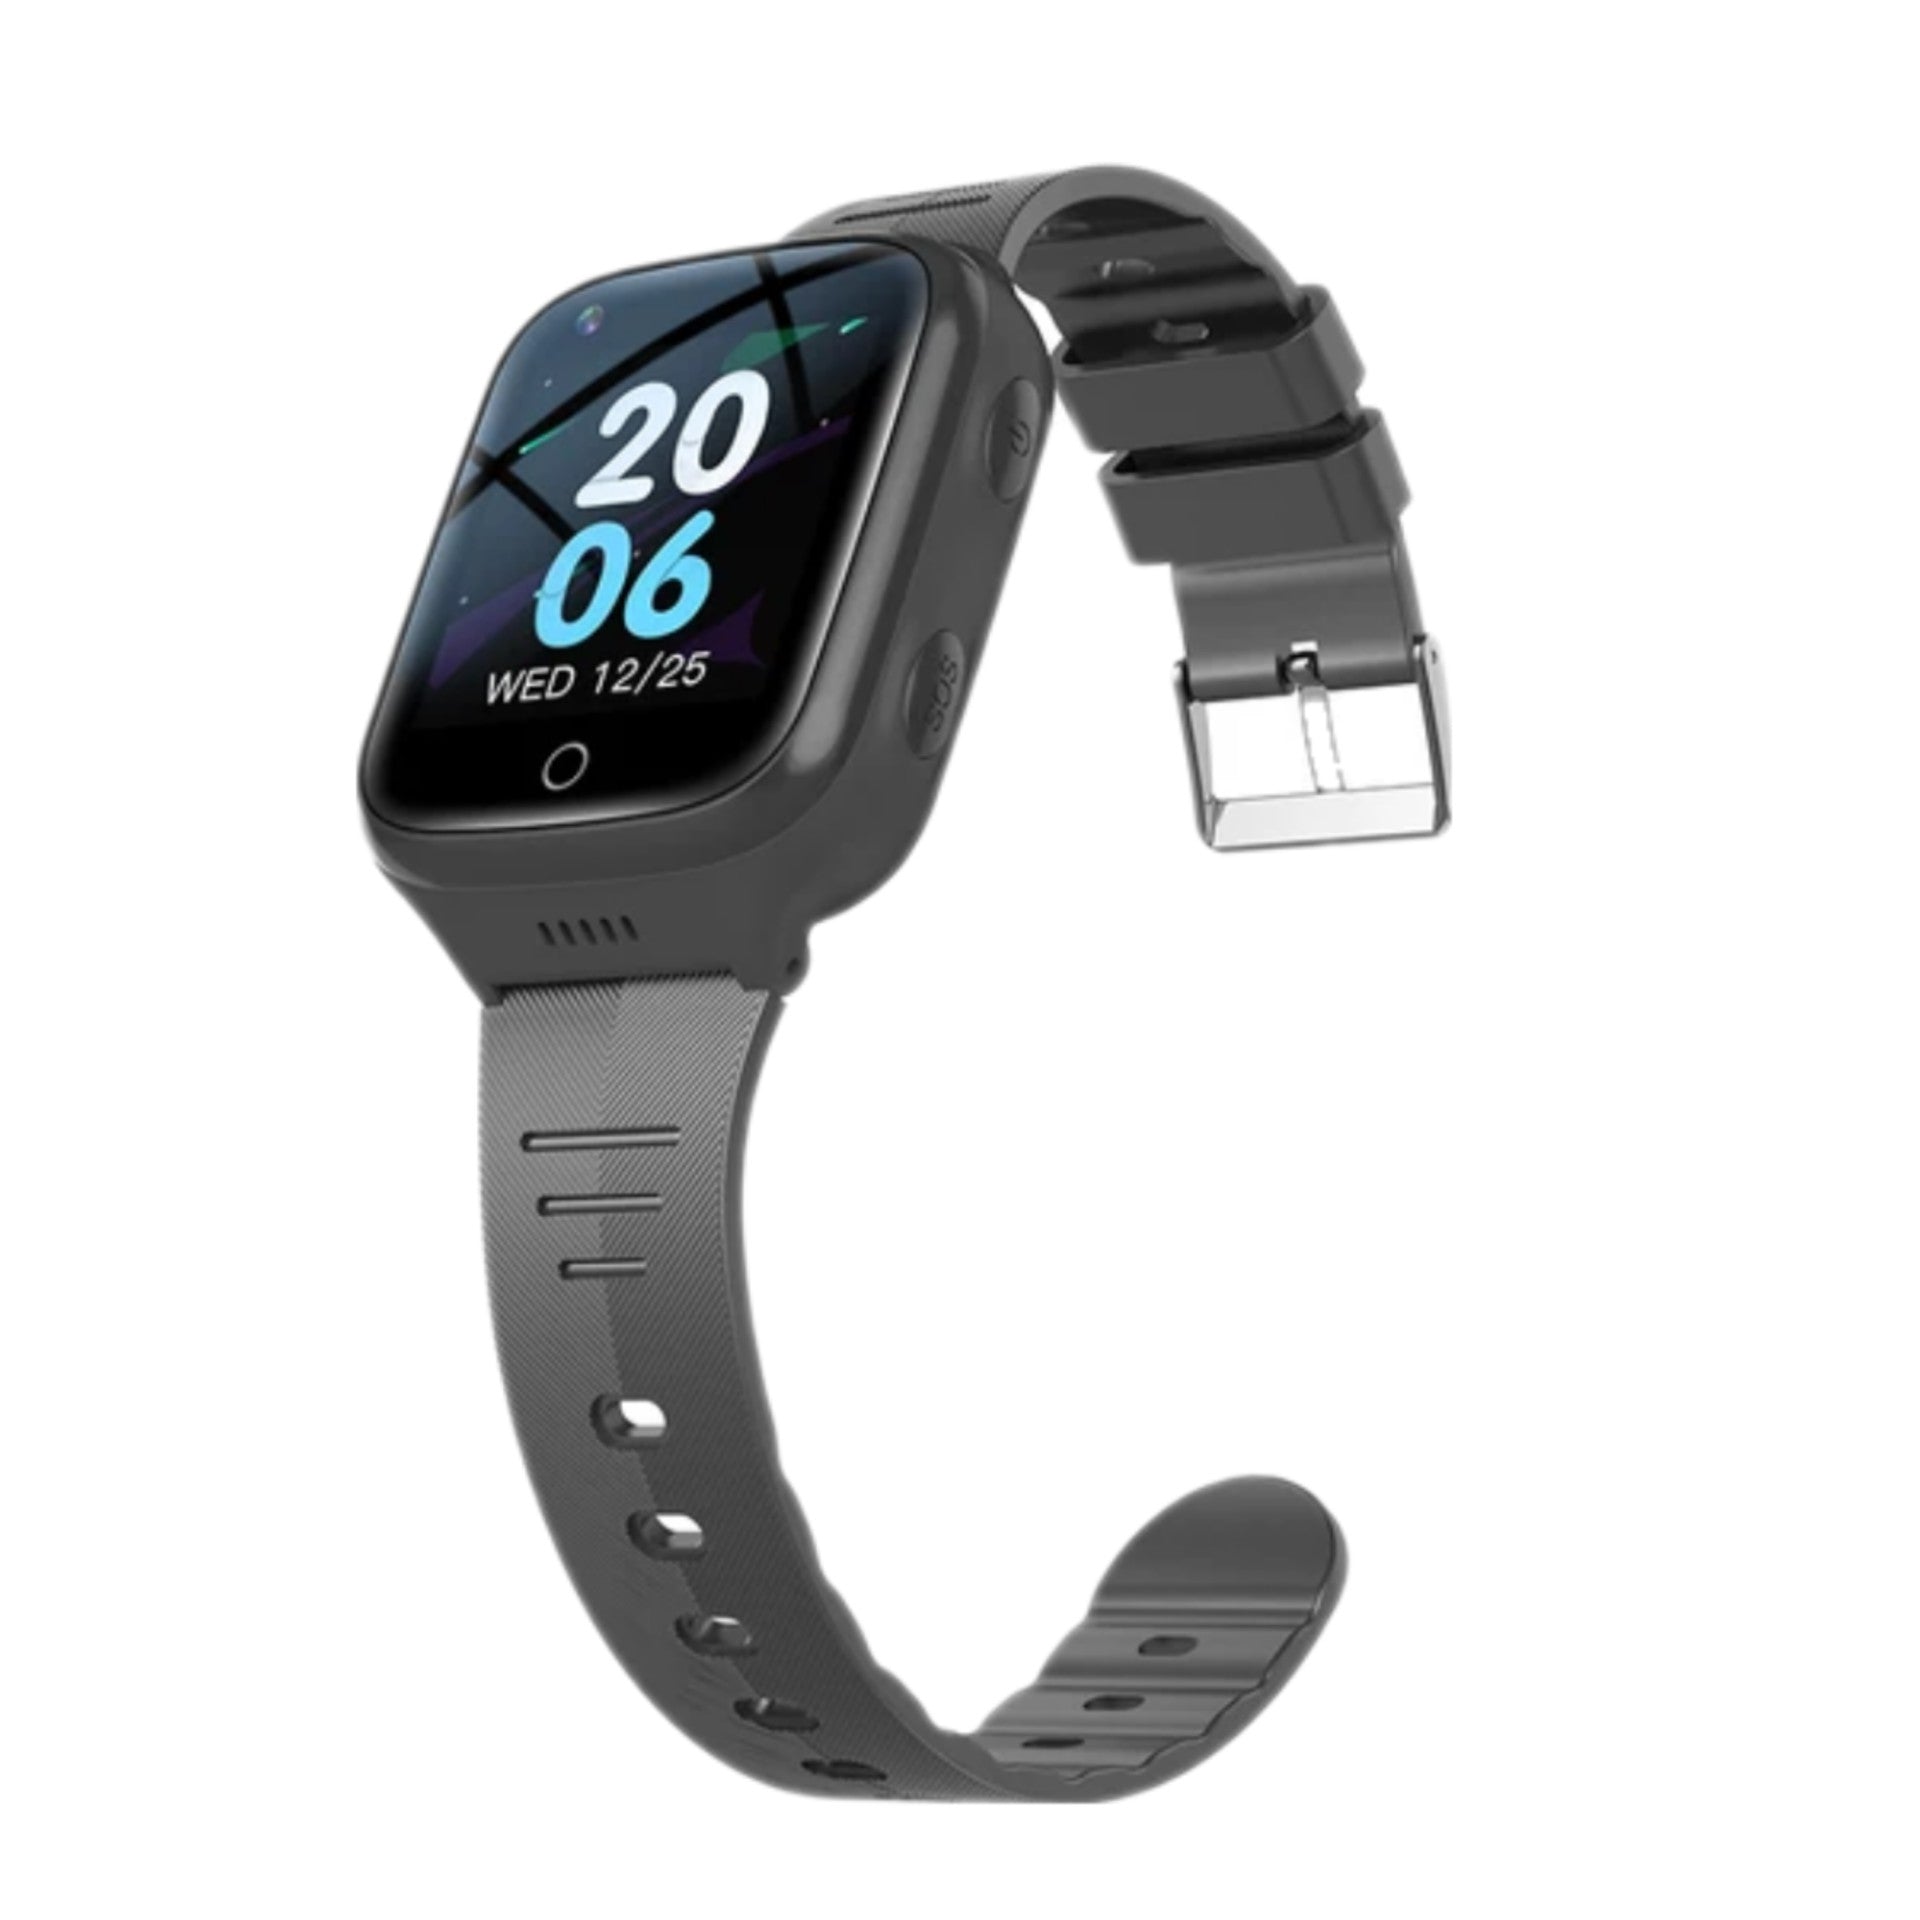 GPS Smartwatch WB9L - GPS Watch Senior - Smartwatch pour personnes âgées - Alarmes personnelles - montre d'alarme personnes âgées - GPS Watch Alzheimer - Détection de chute